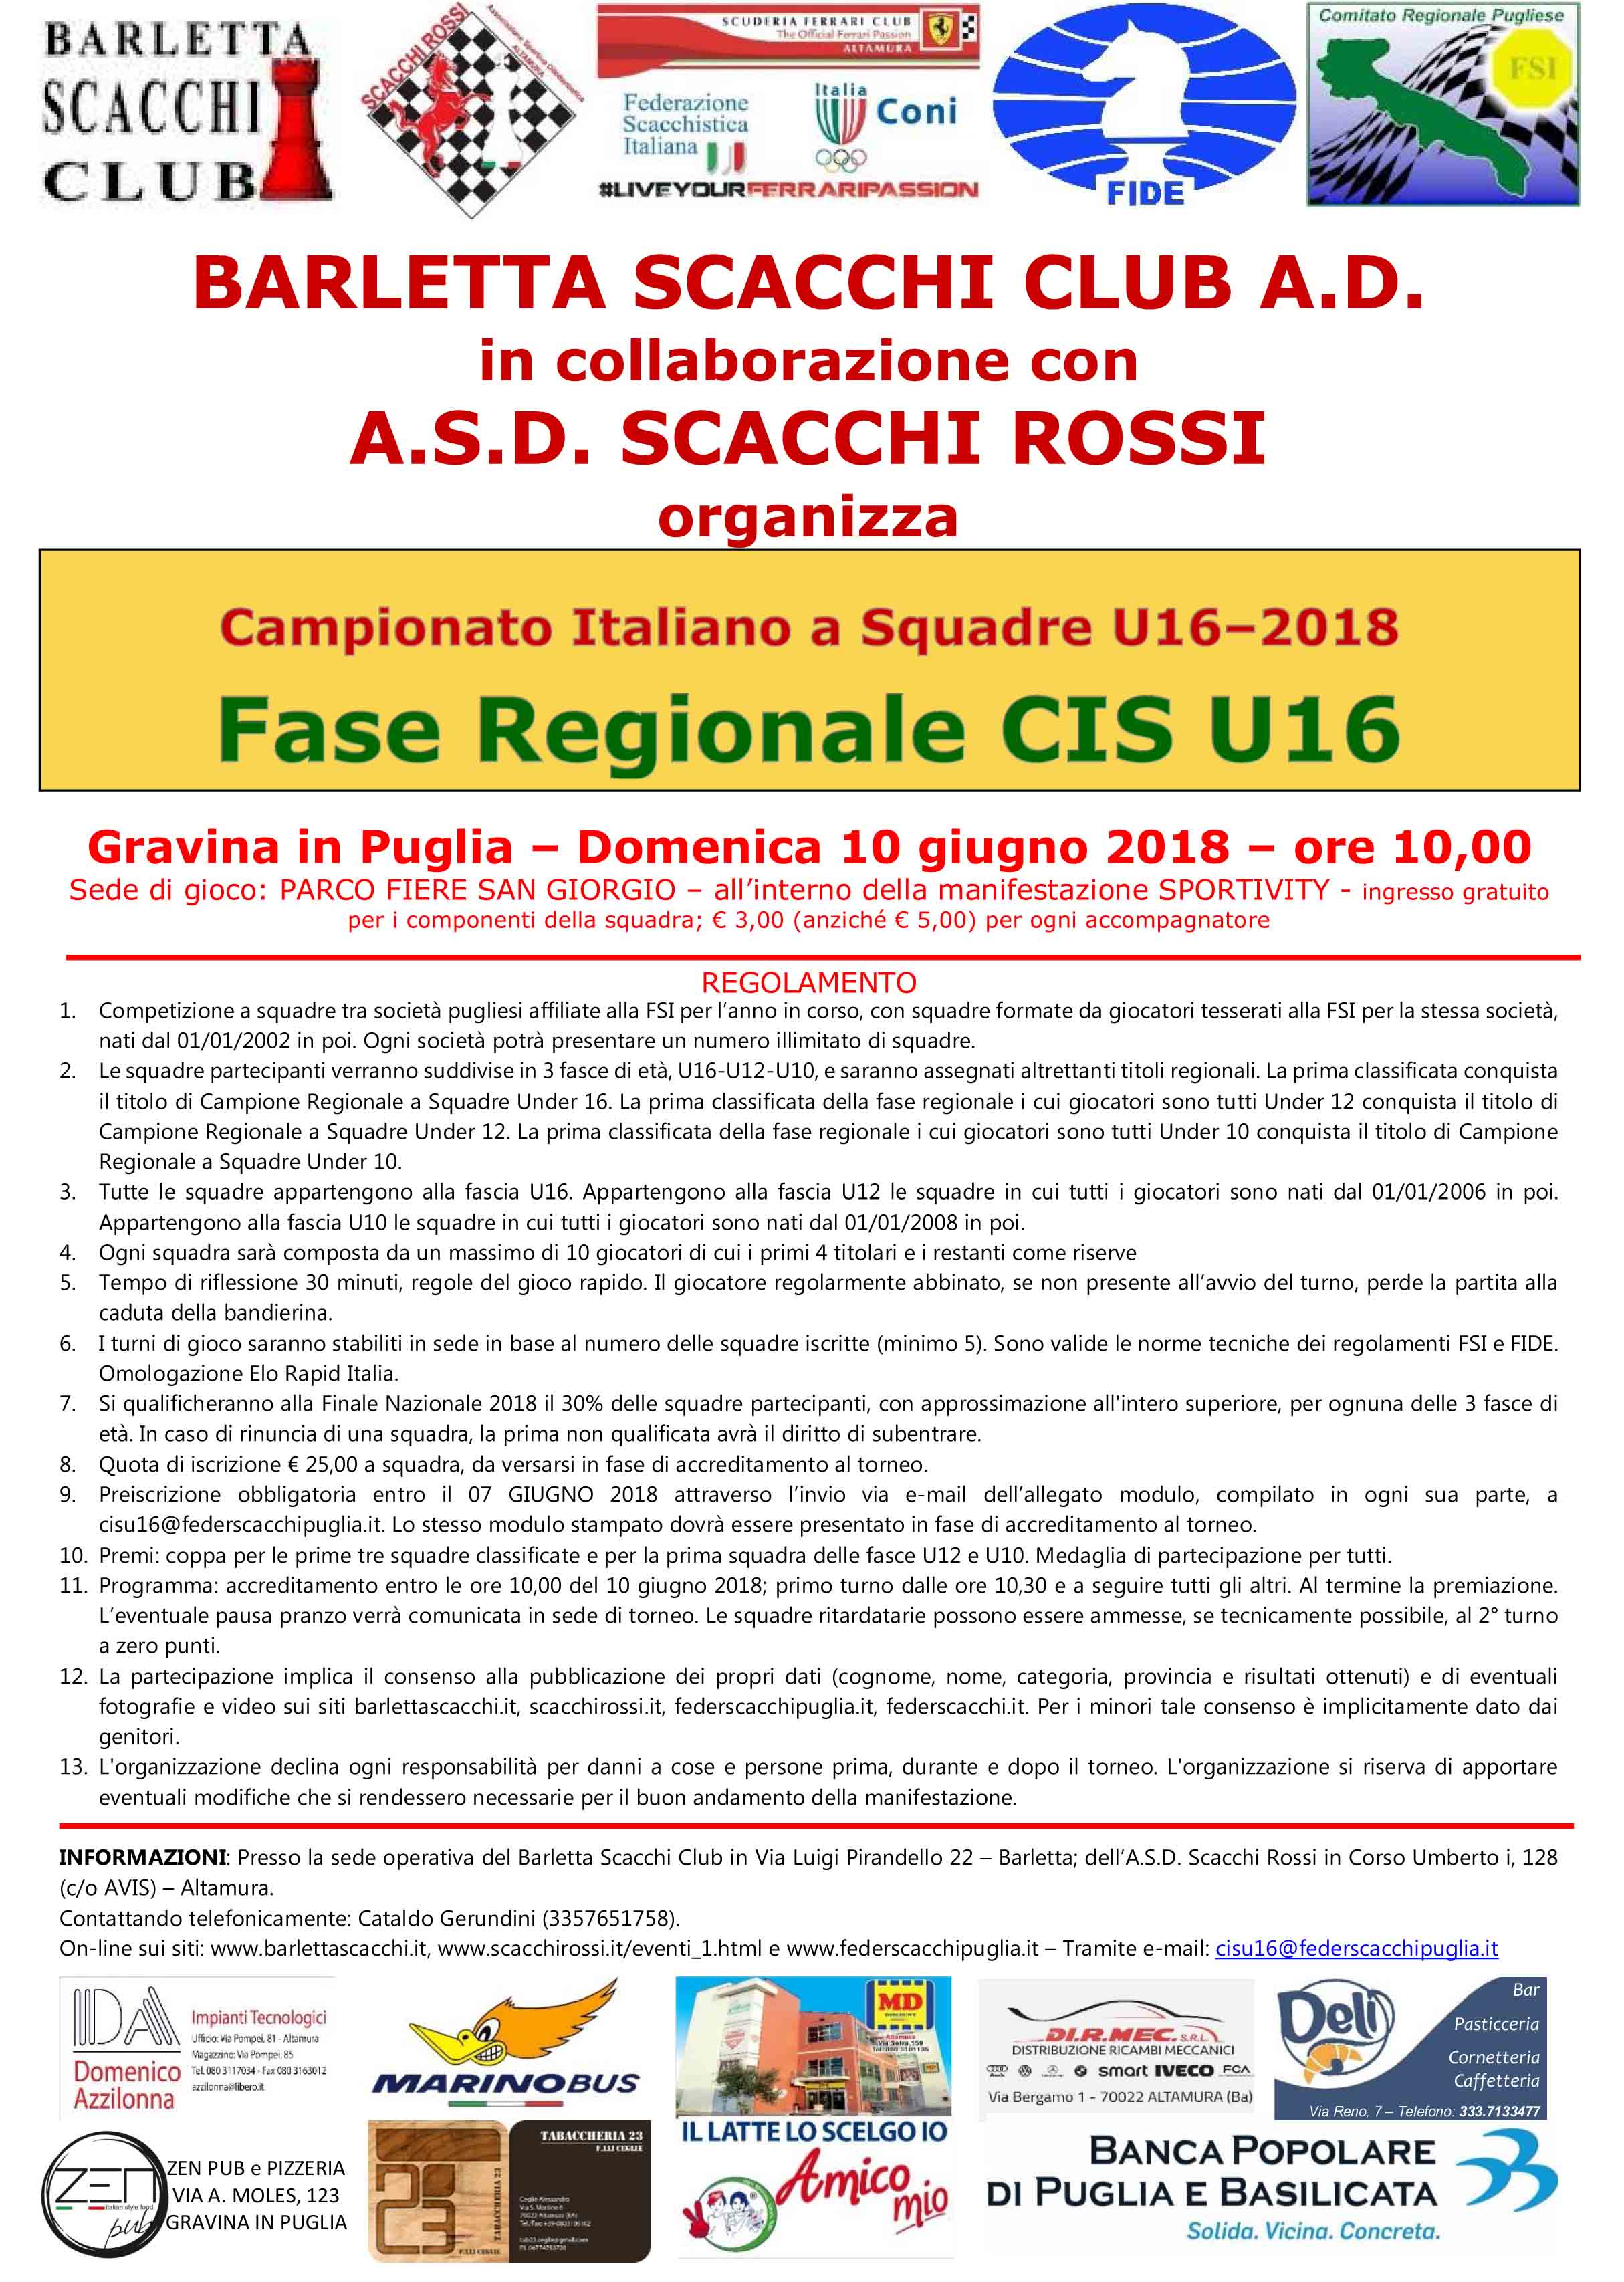 regolamento_CIS_U16_2018_Puglia